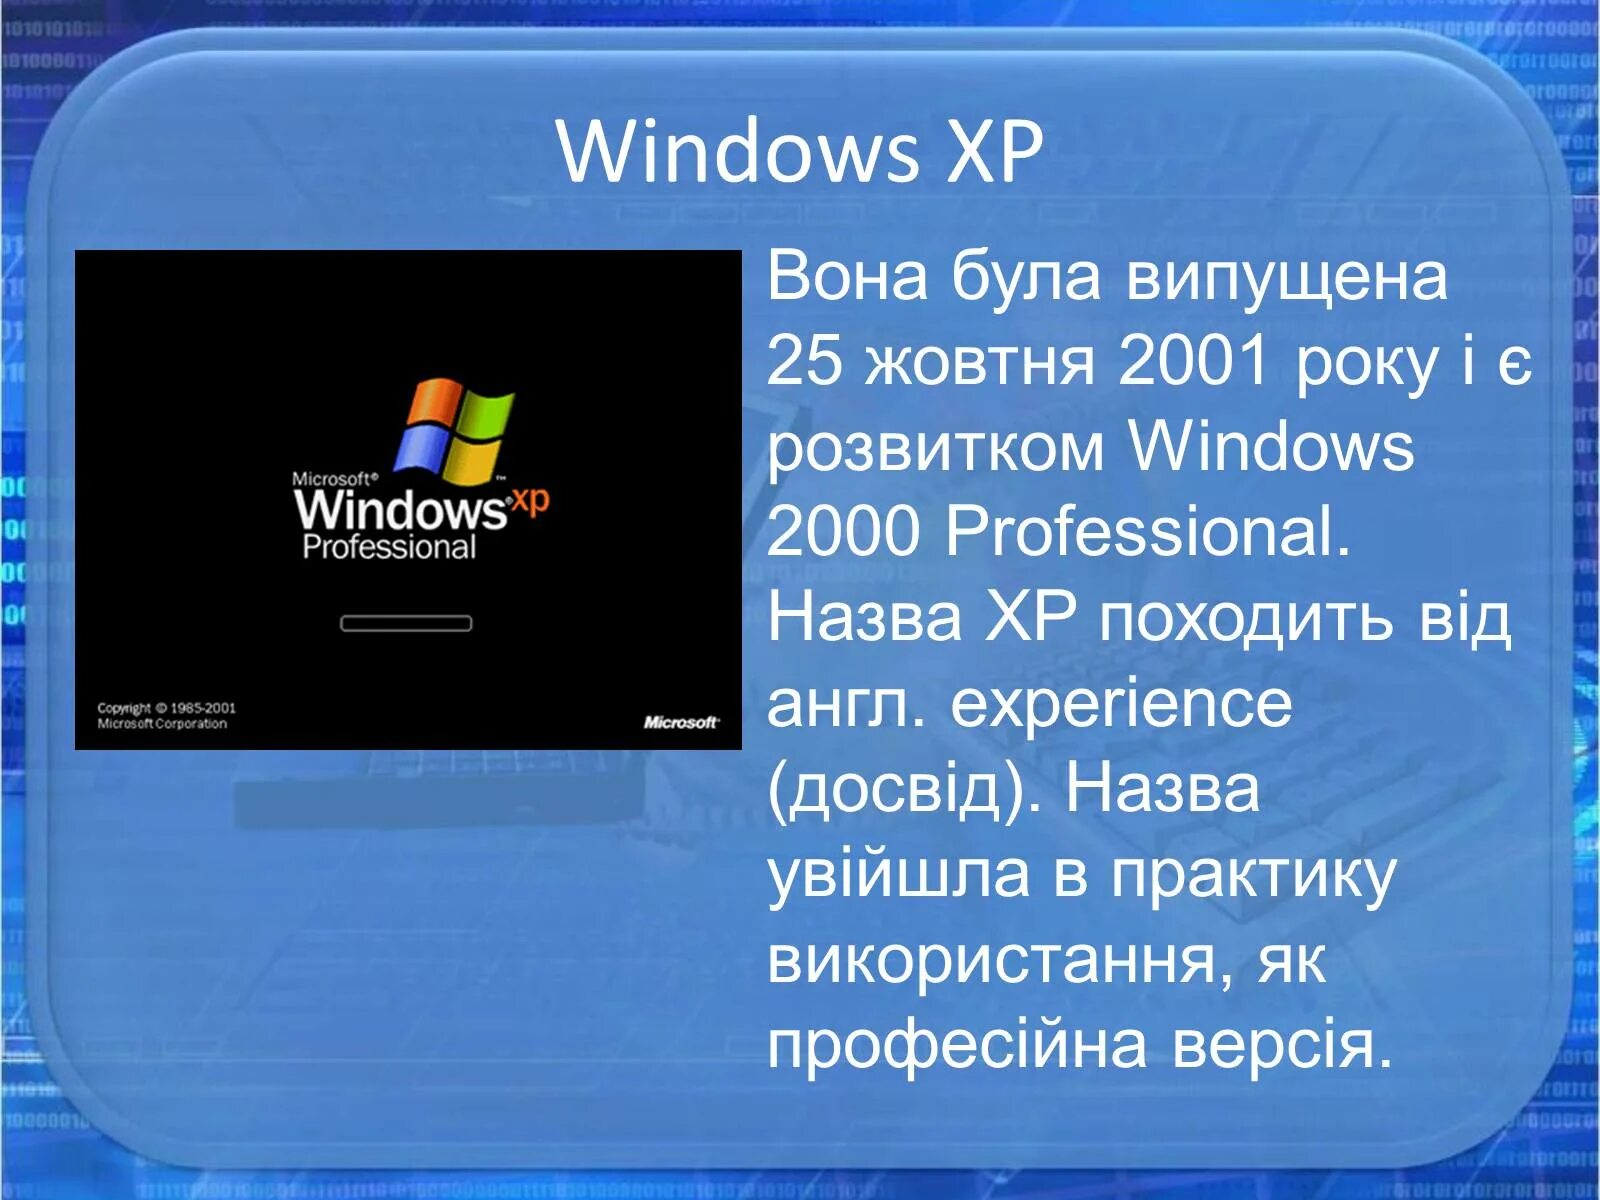 Описание операционных систем. Операционная система Windows. Операционная система Windows презентация. Оперативная система Windows. Презентация на тему Операционная система Windows.